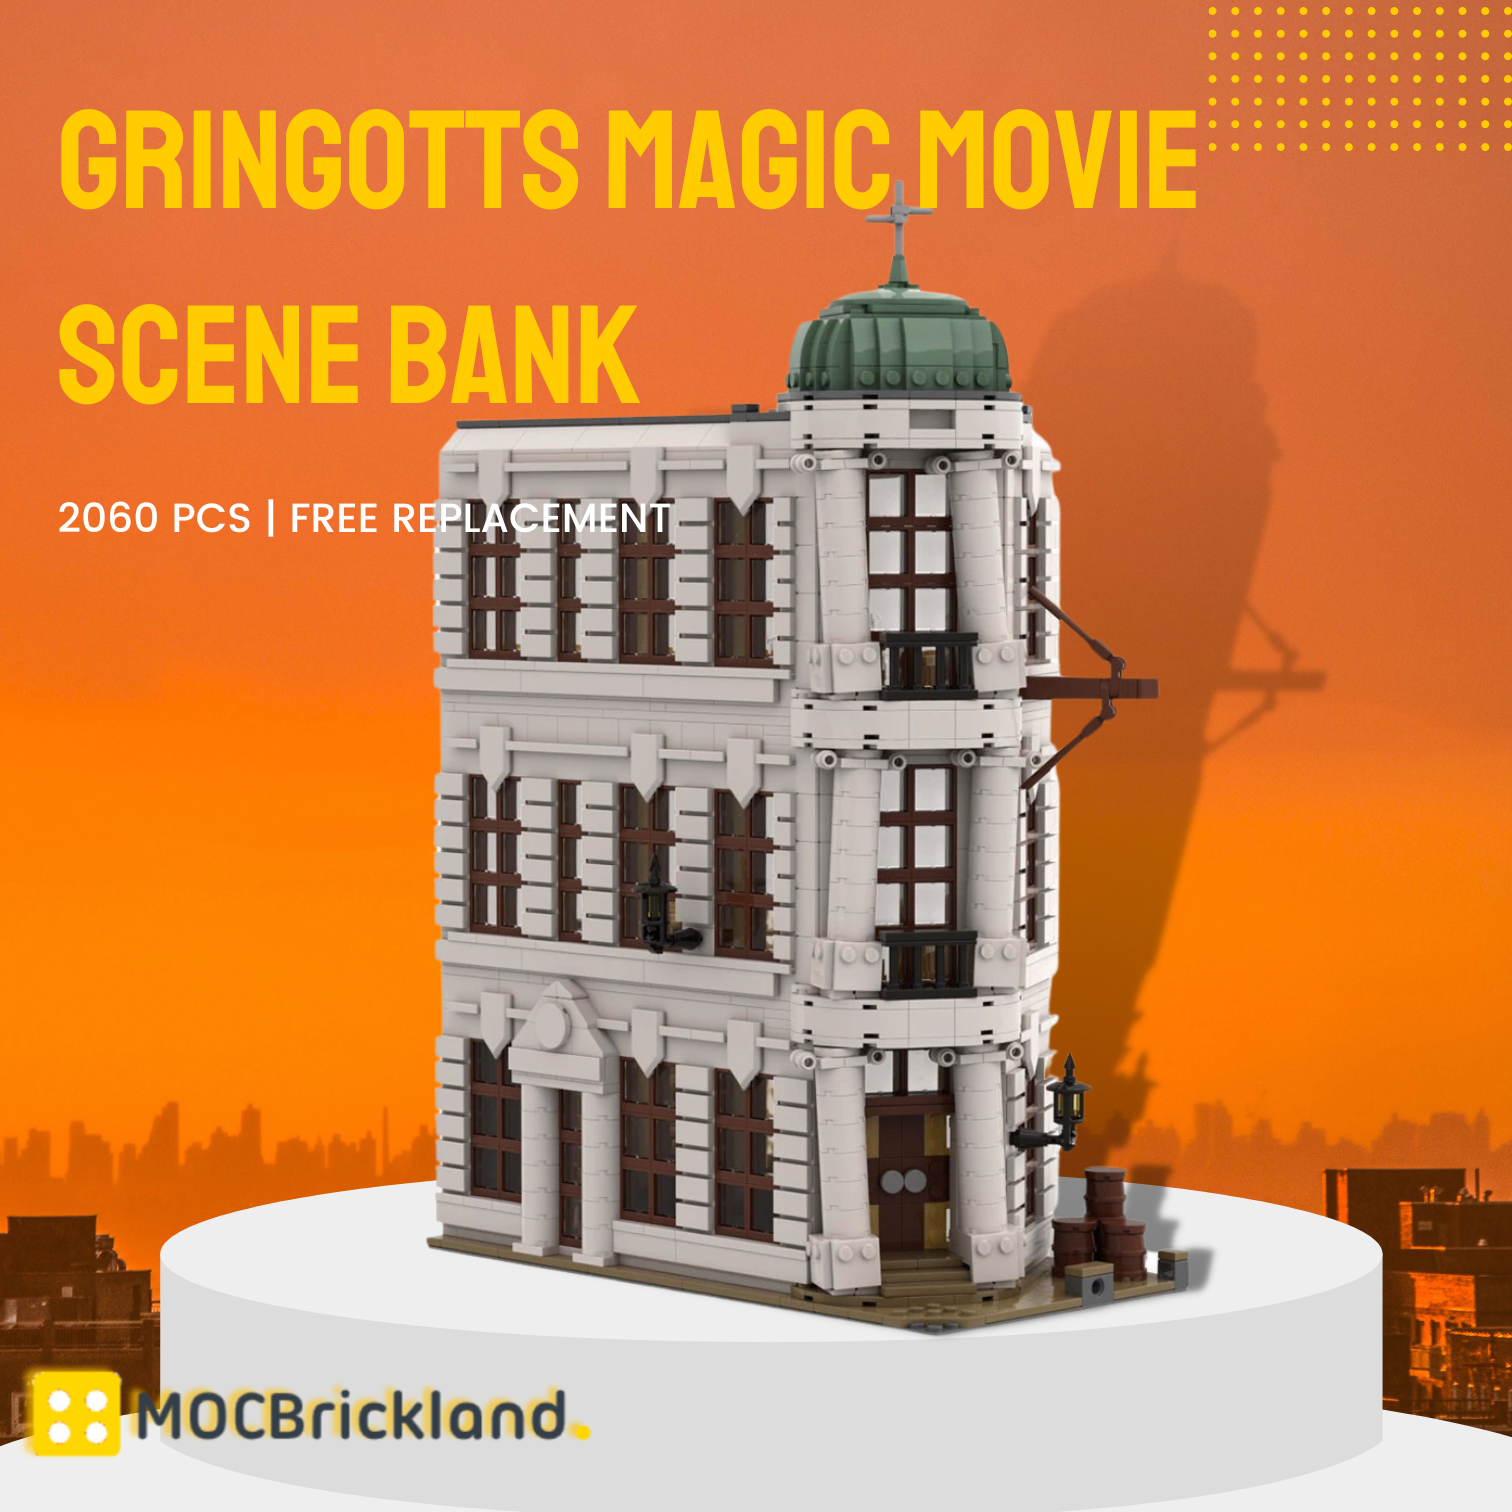 Movie MOC-74217 Gringotts Magic Movie Scene Bank MOCBRICKLAND